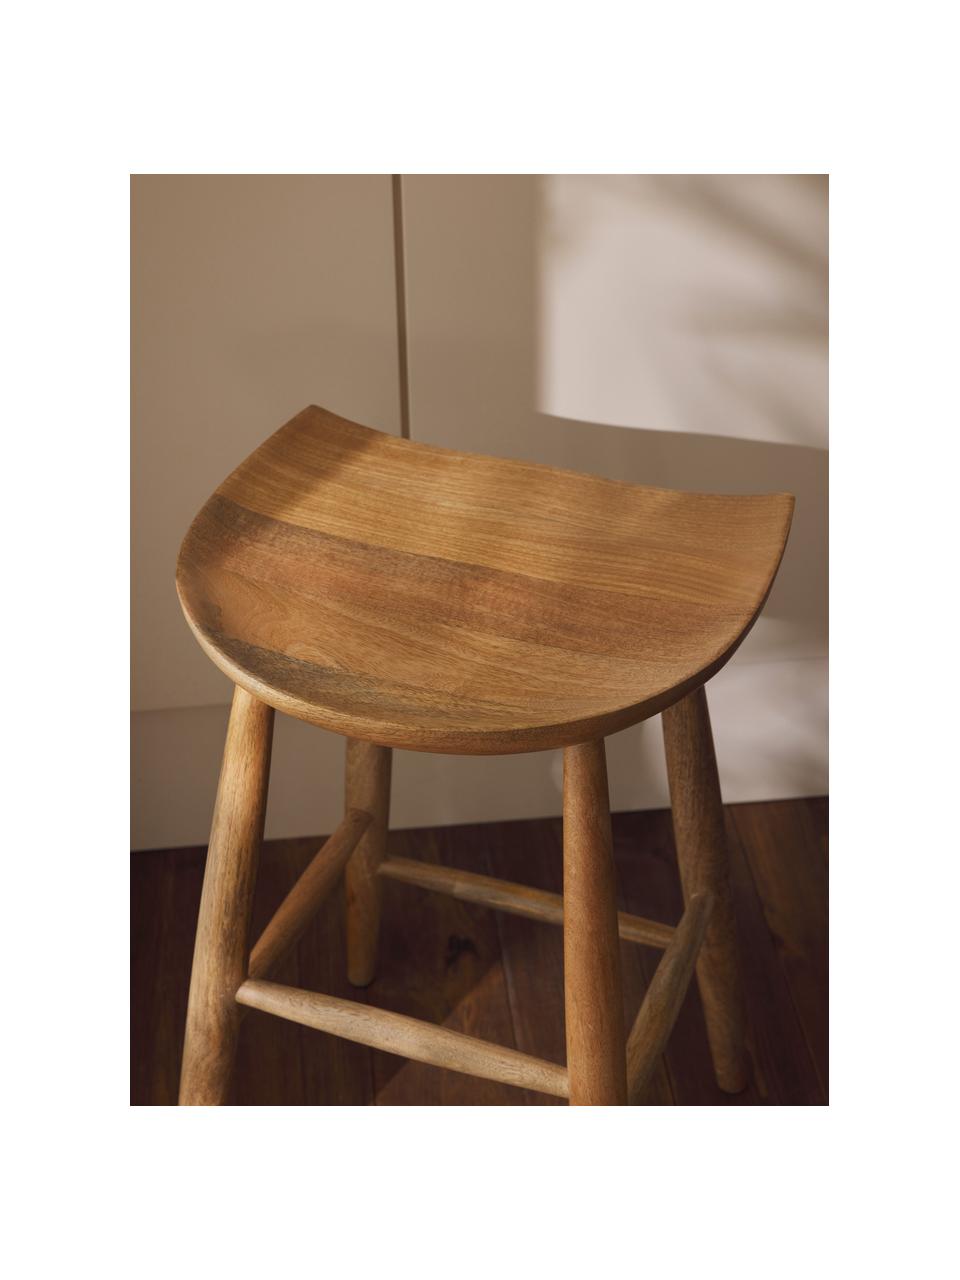 Barová stolička z mangového dreva Nino, Masívne mangové drevo, lakované, Mangové drevo, Š 40 x V 66 cm